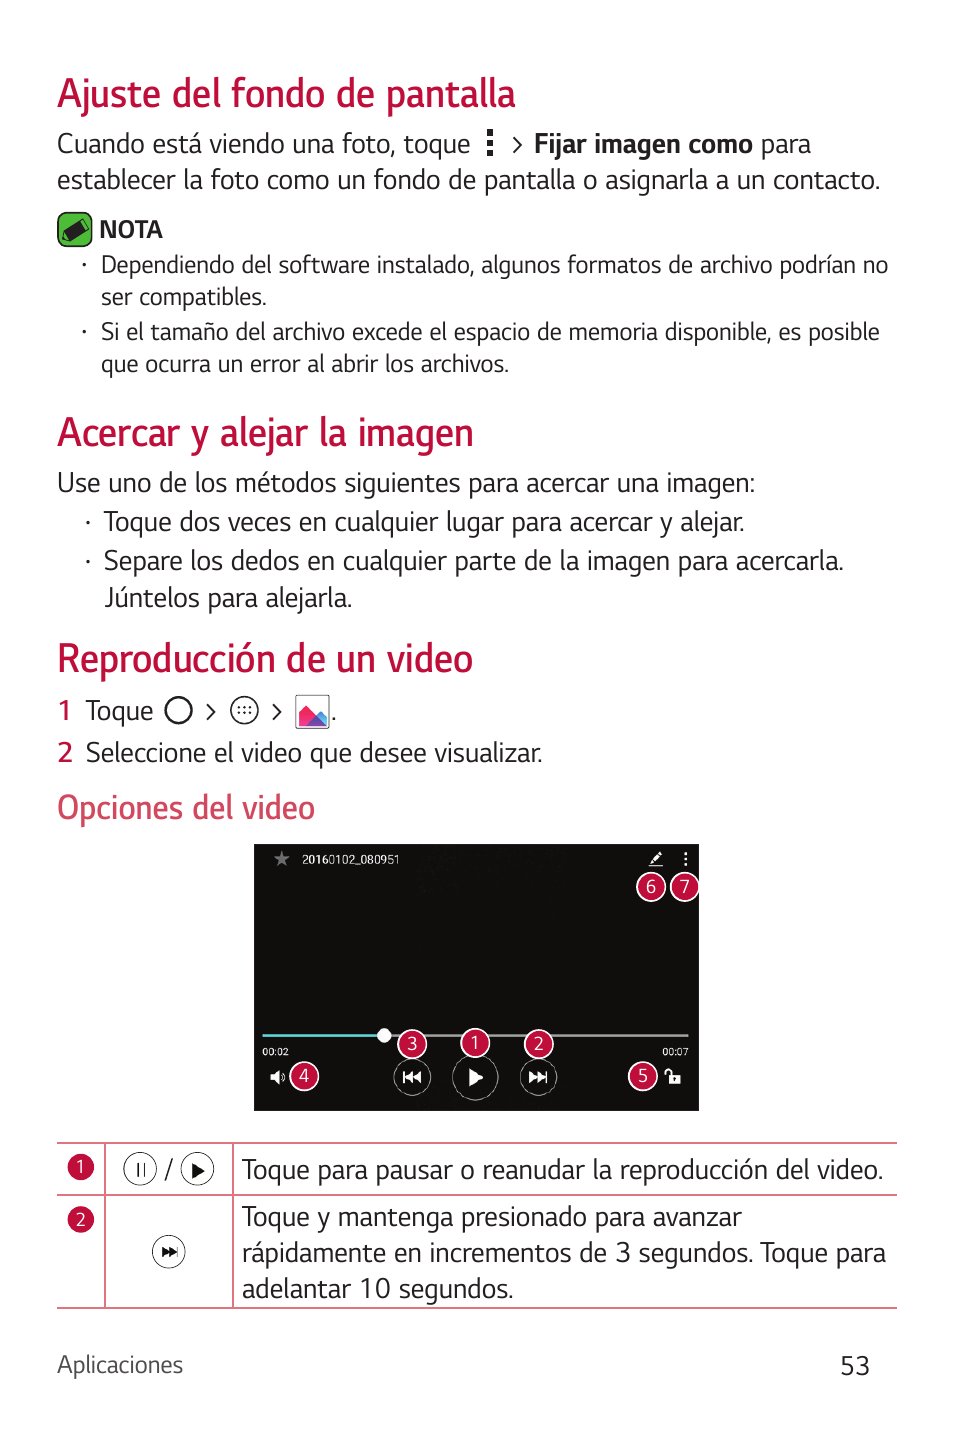 Ajuste del fondo de pantalla, Acercar y alejar la imagen, Reproducción de un video | Opciones del video | LG Phoenix 2 LG-K371 Manual del usuario | Página 54 / 131